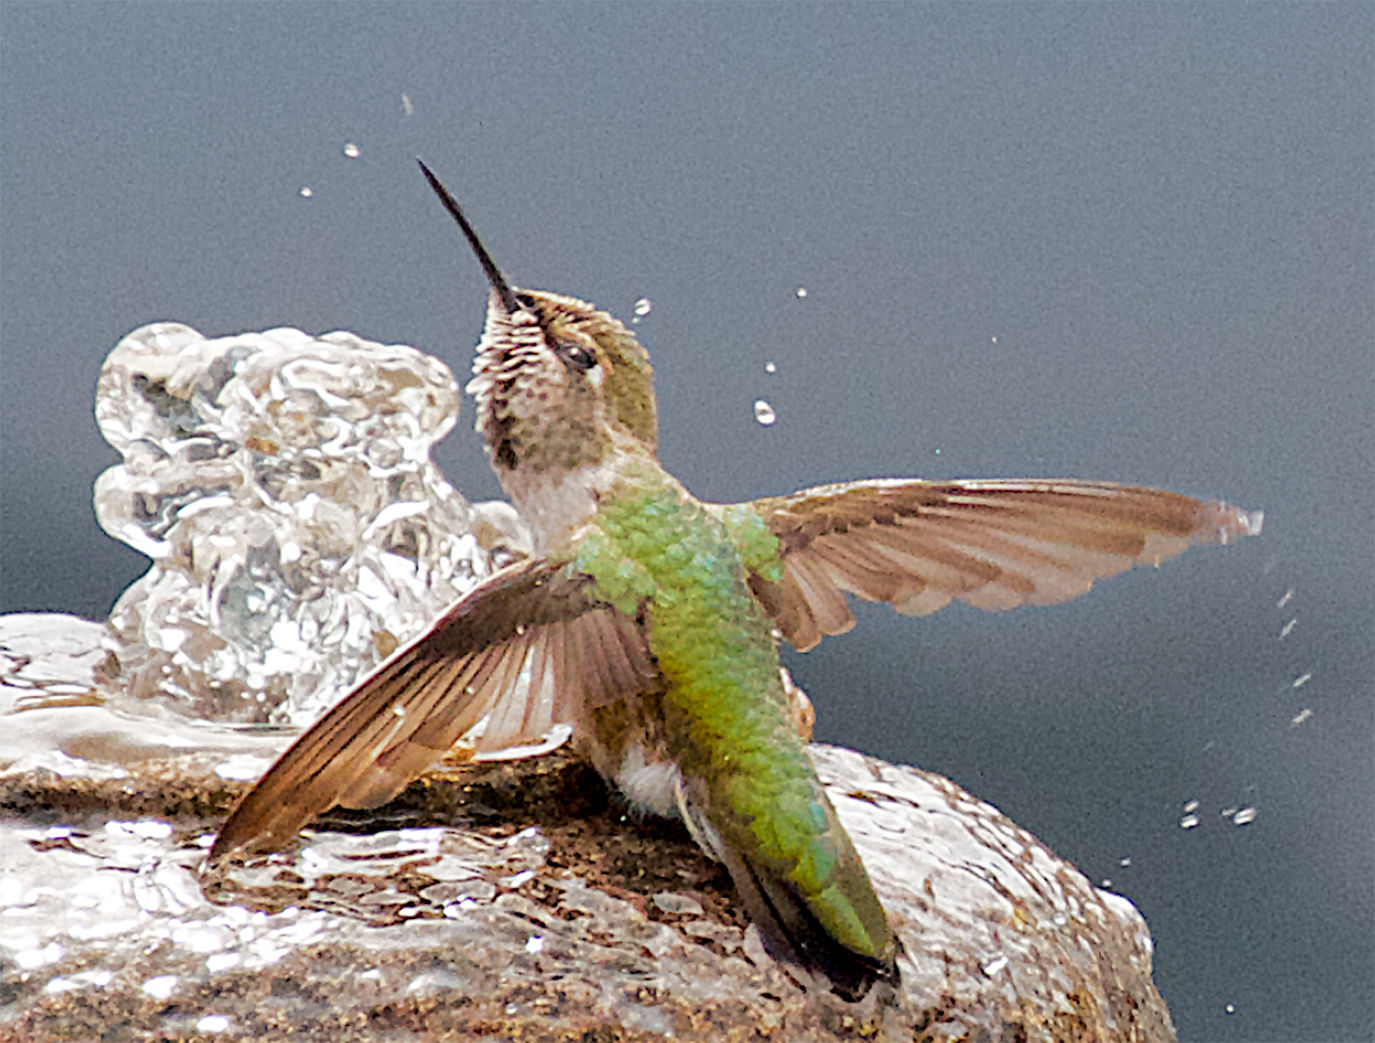 tweet southern hummingbird album zip